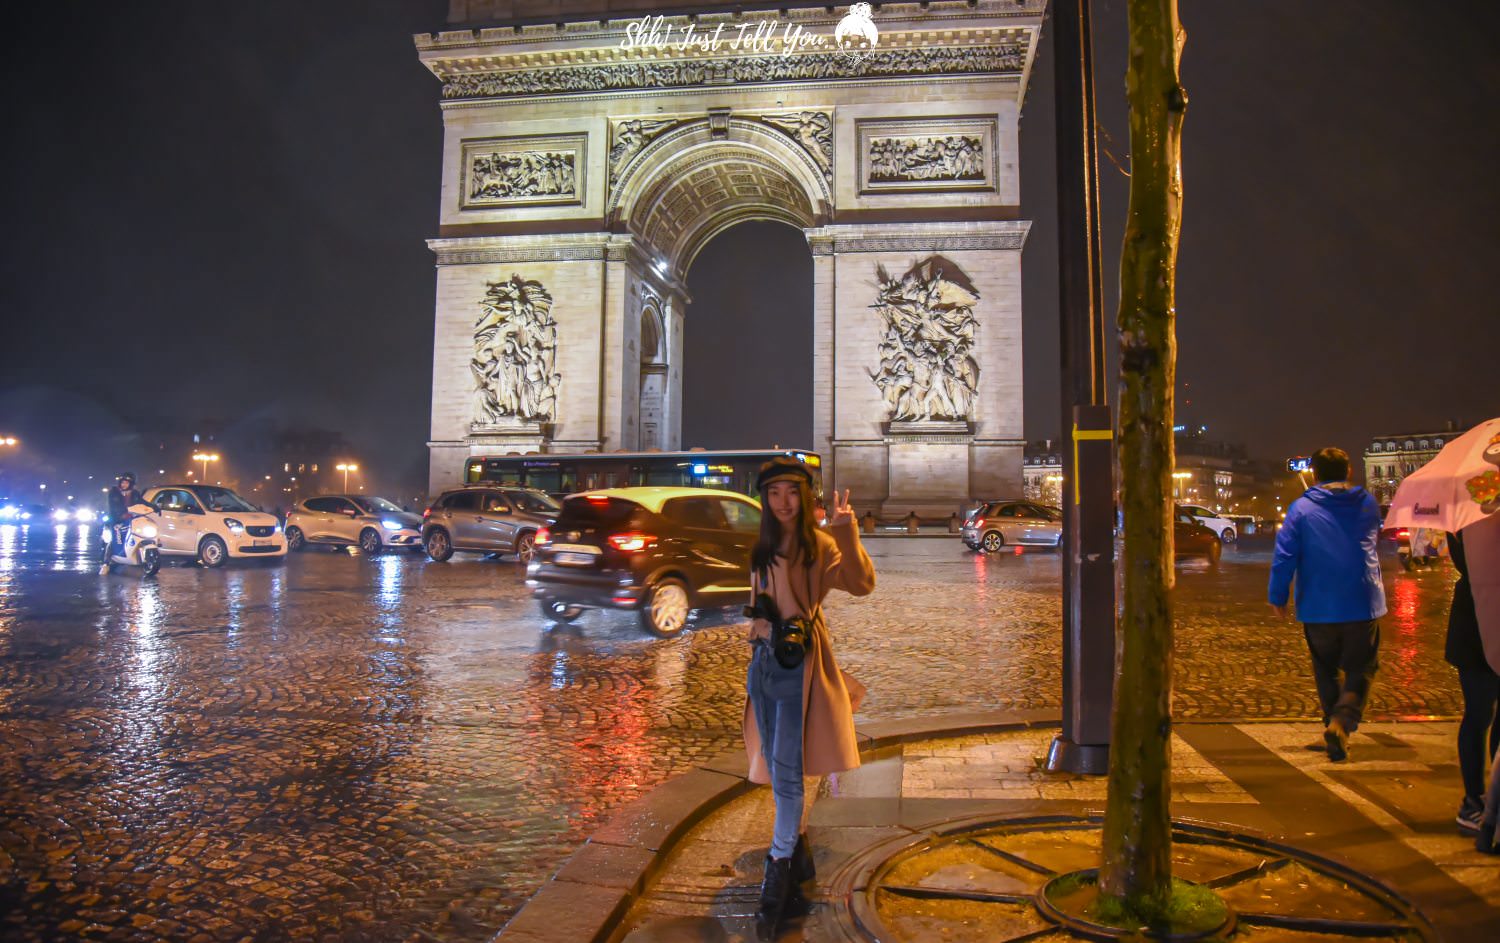 法國巴黎凱旋門